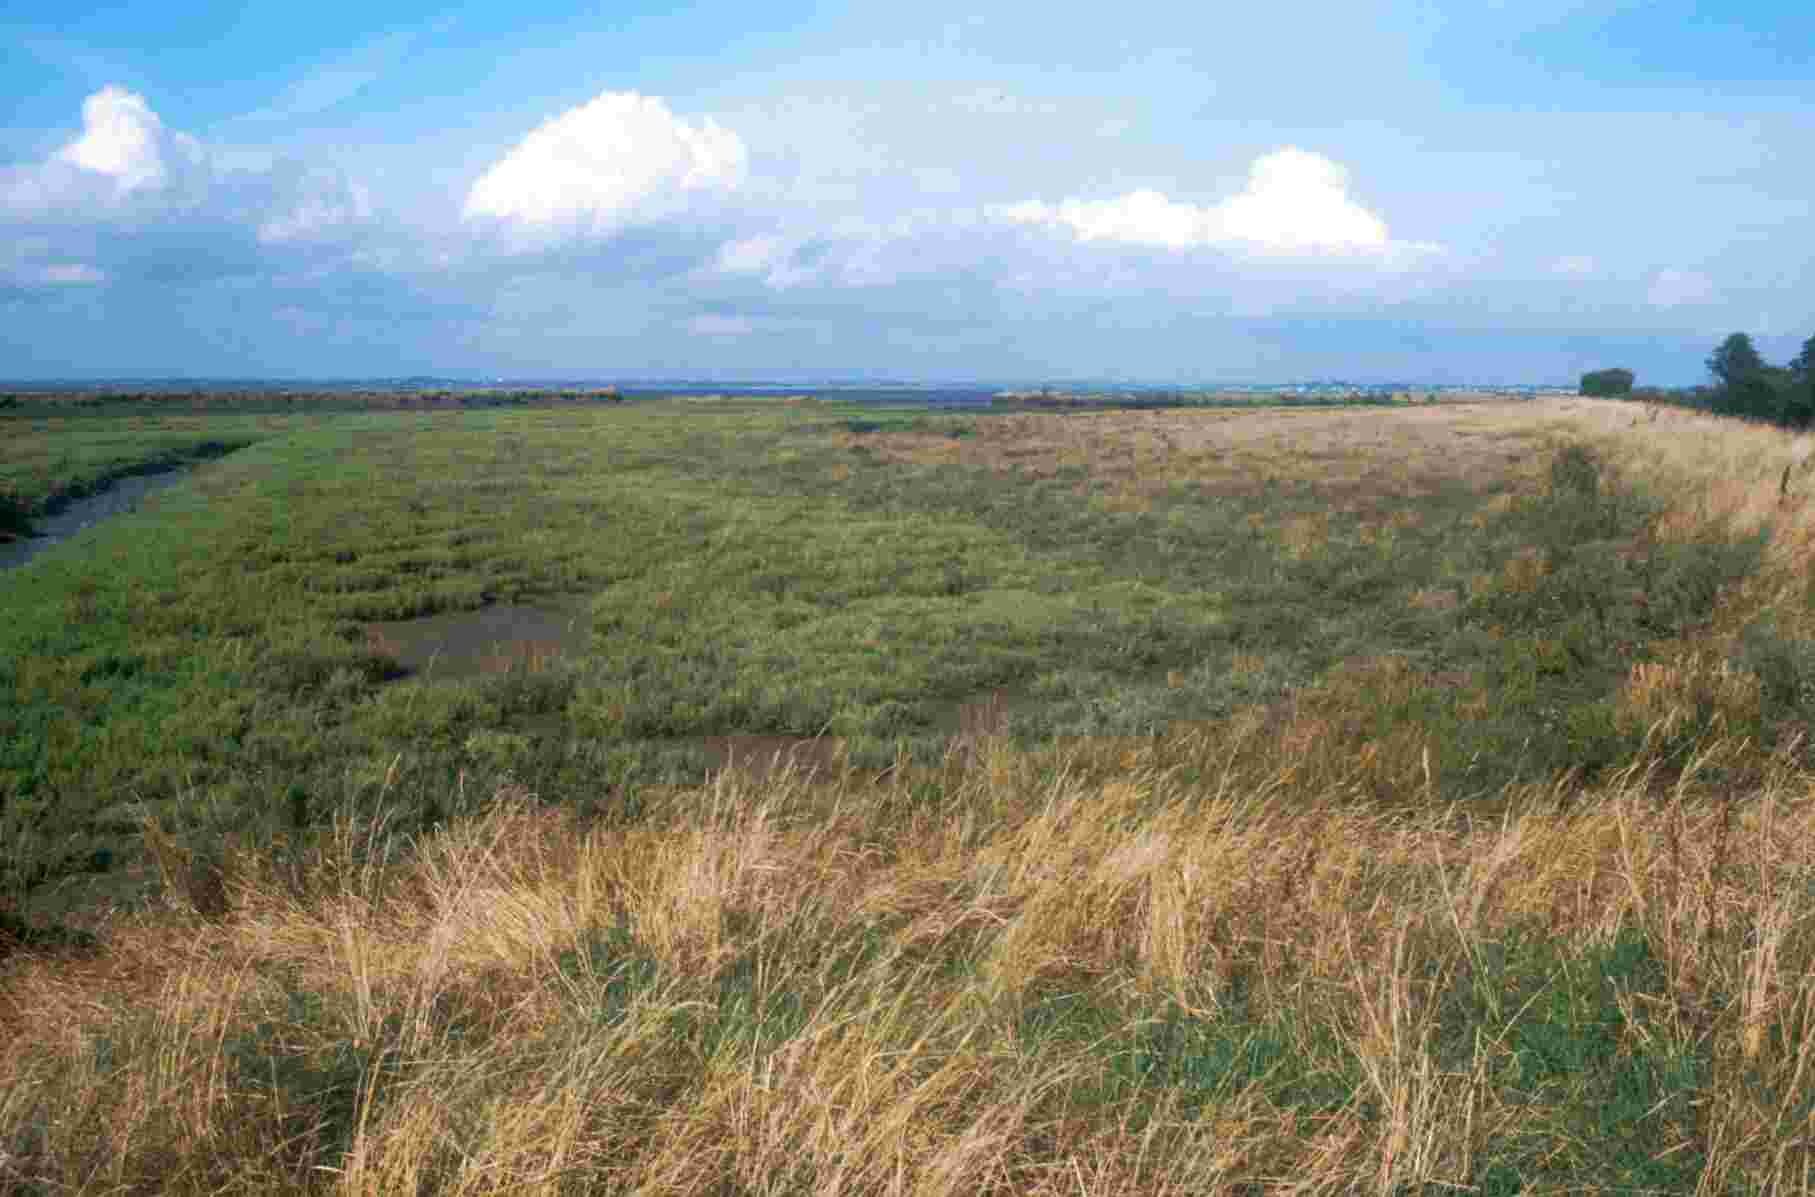 Upper marsh